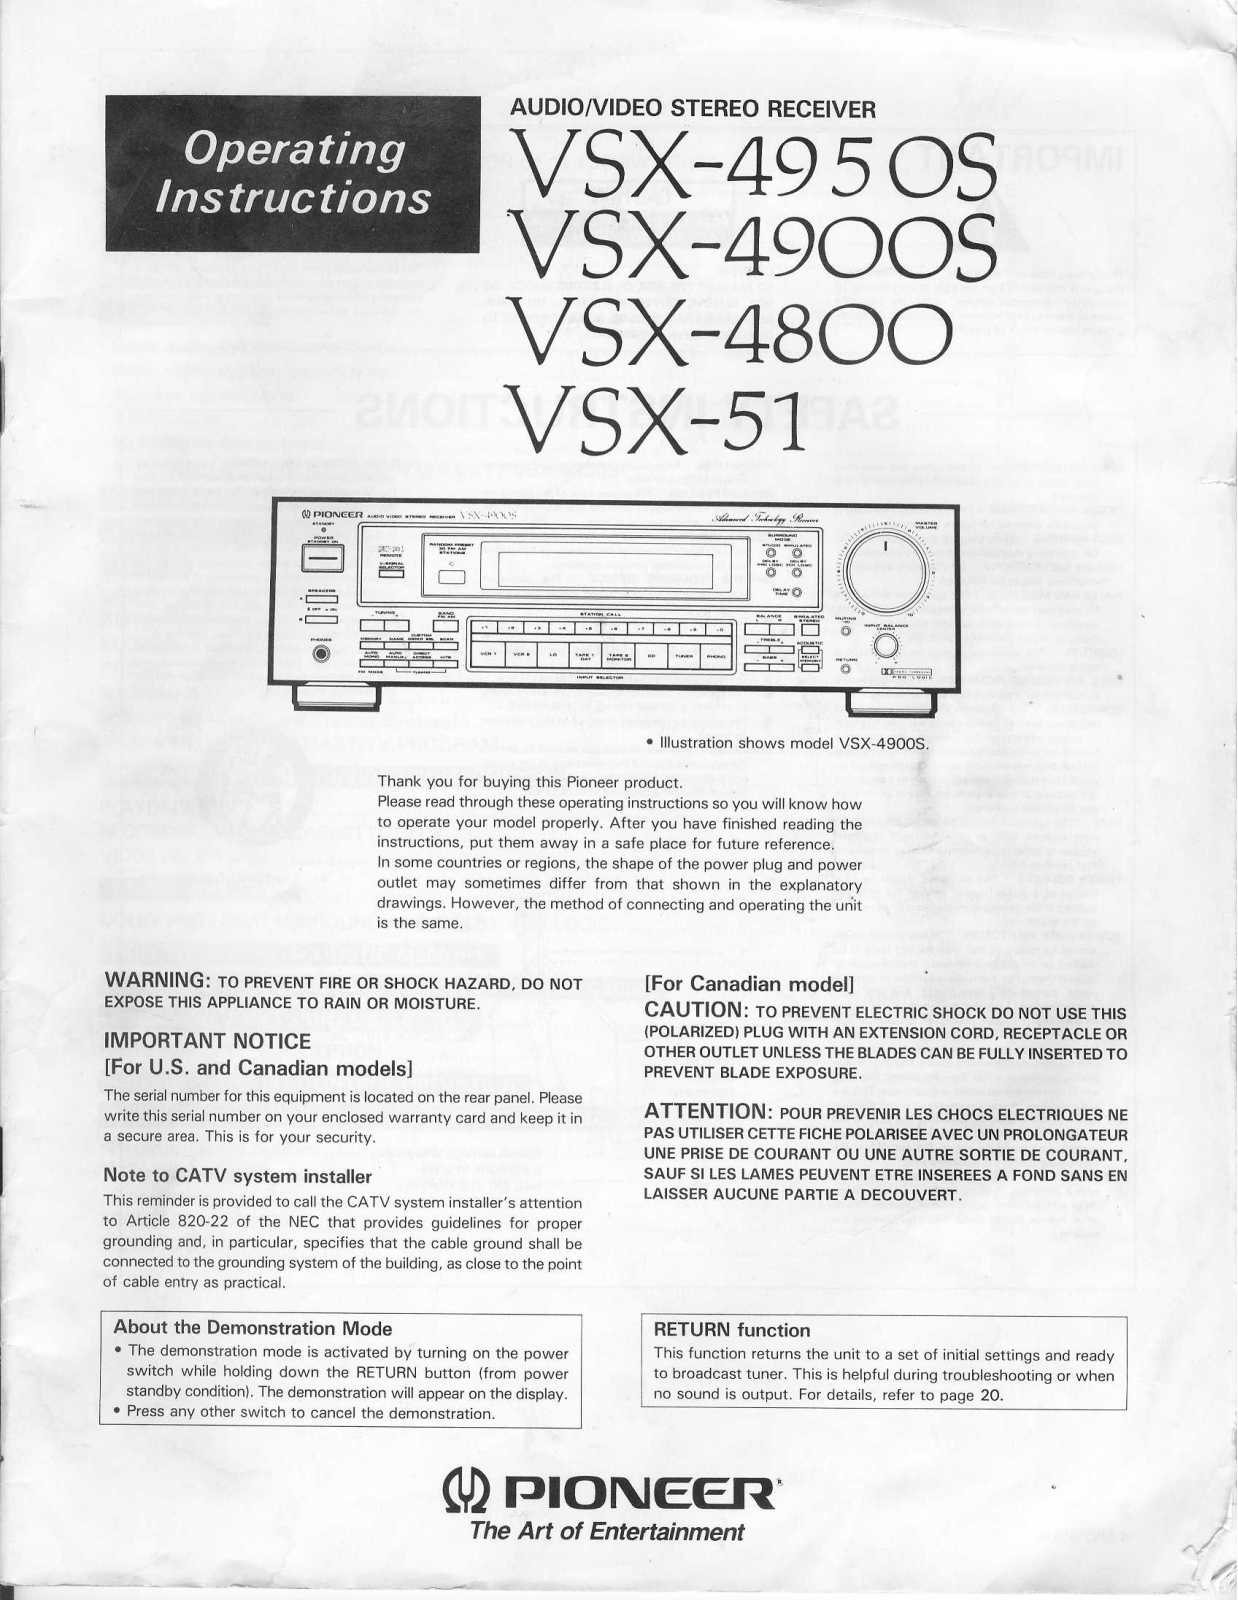 Pioneer VSX-51, VSX-4900S, VSX-4950S Manual